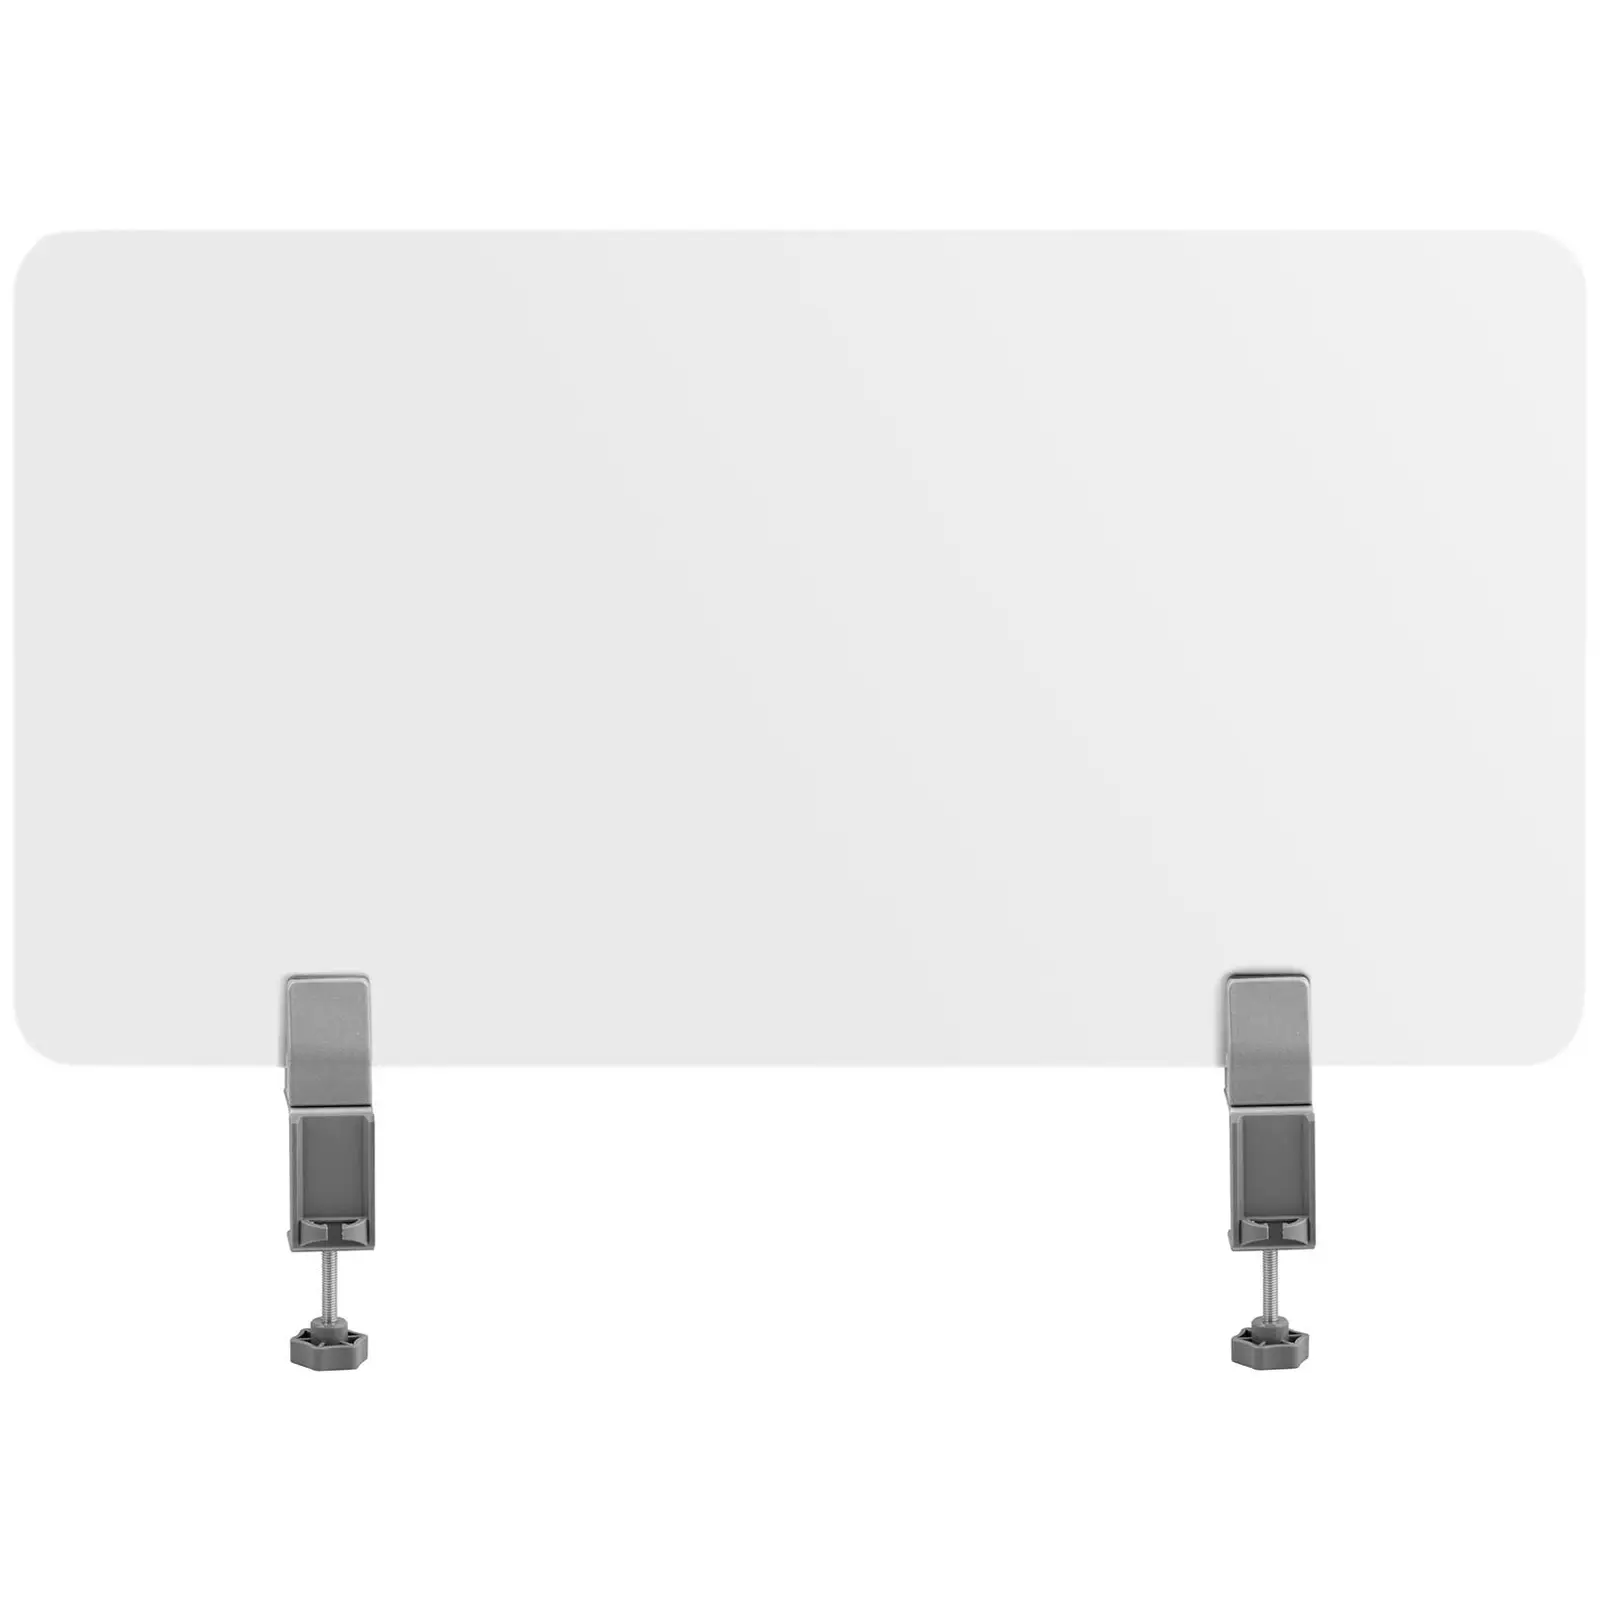 Bordskærm - 3 stk. i to størrelser: 1.500 x 400 mm, 750 x 400 mm